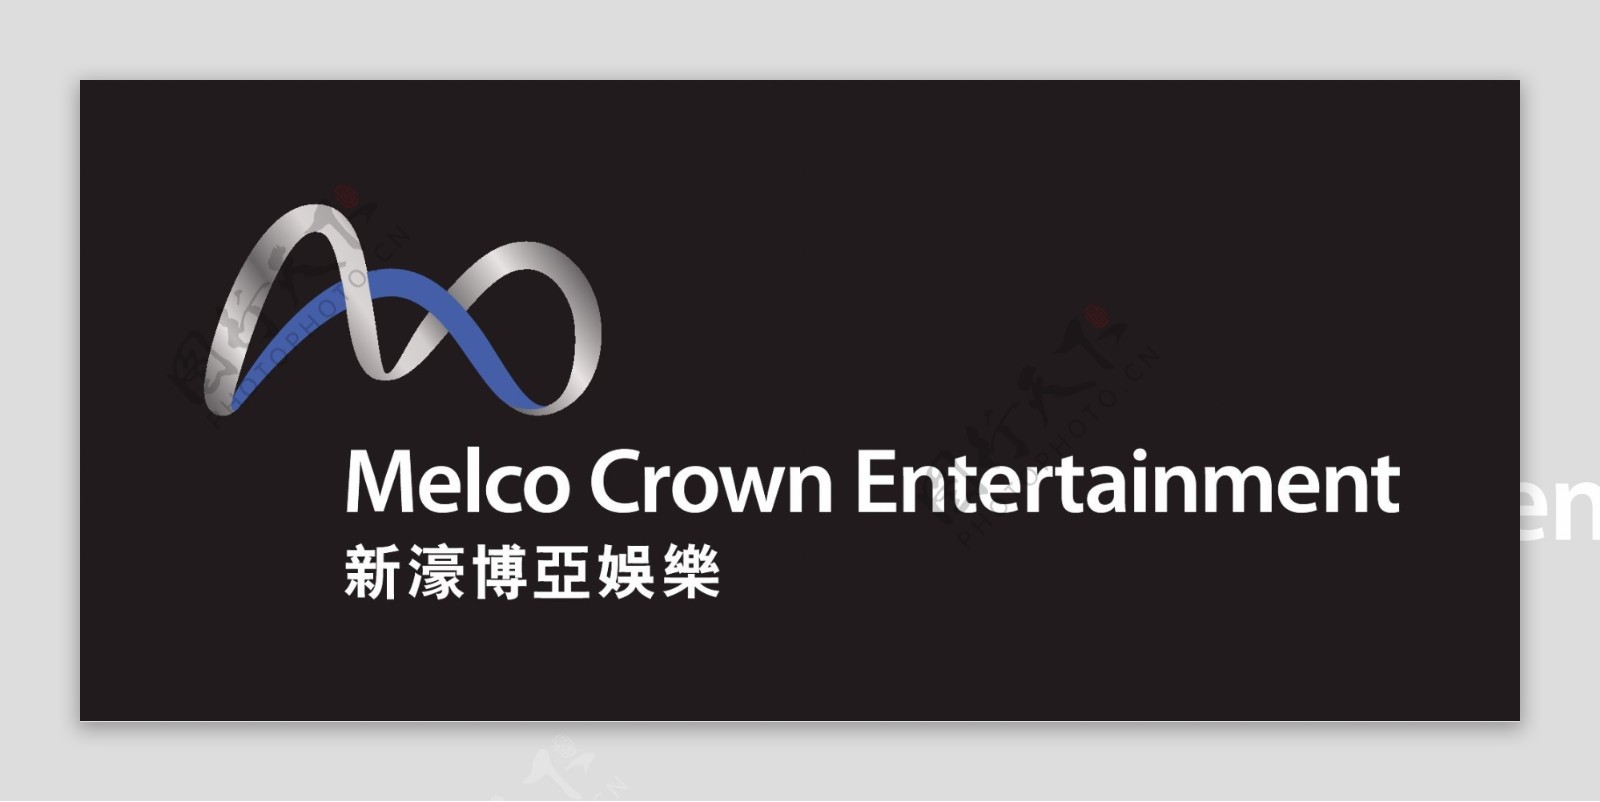 新濠博亚娱乐logo